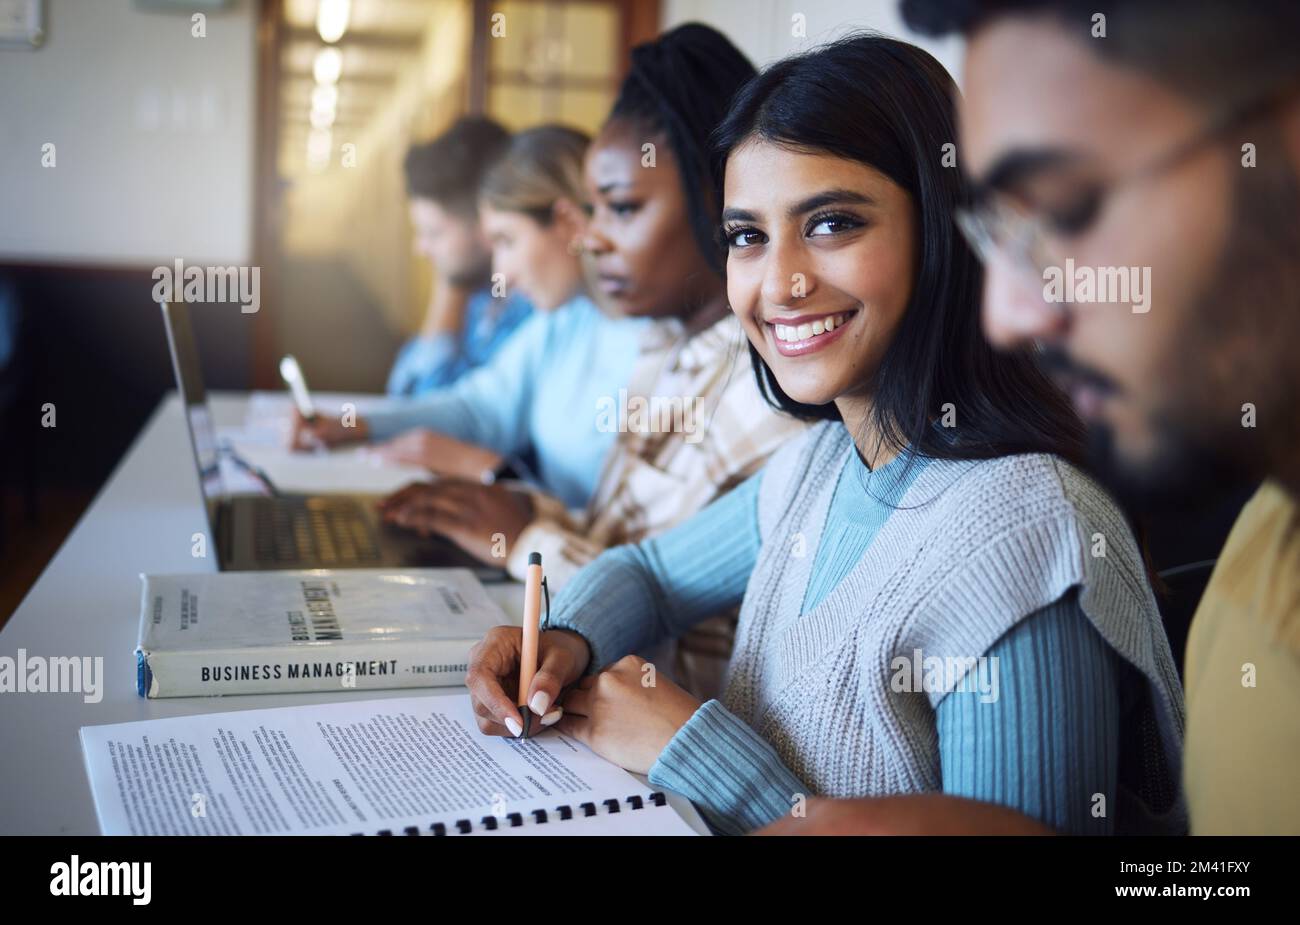 L'étudiant de l'université écrit des notes pour la gestion des affaires en classe, cours et campus. Portrait, jeune fille indienne et étudiant à l'université heureux pour Banque D'Images